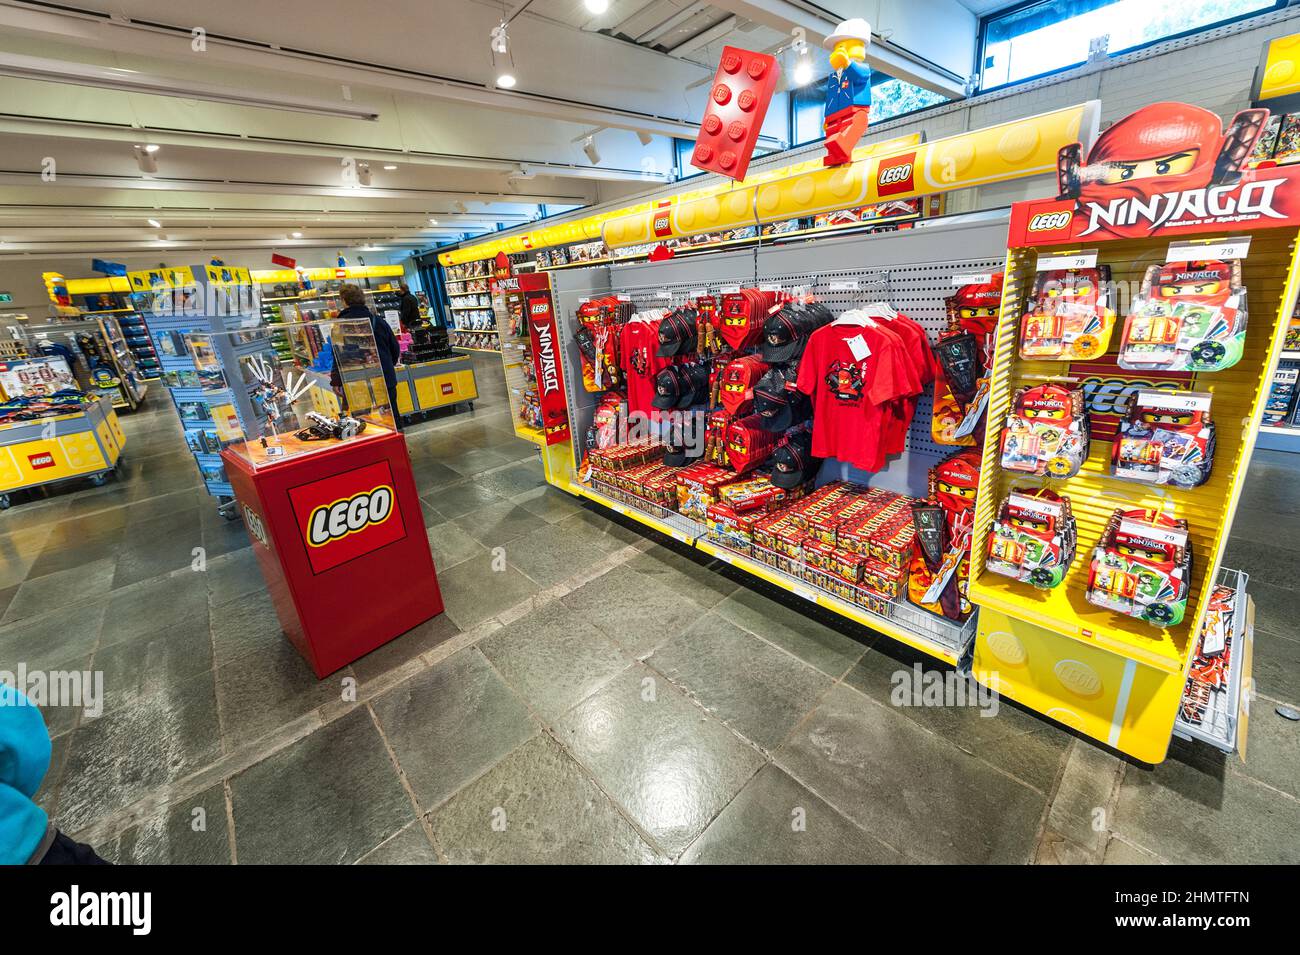 Billund, Denmark - June 25 2011: Interior view of the Lego store at Legoland Billund Photo - Alamy